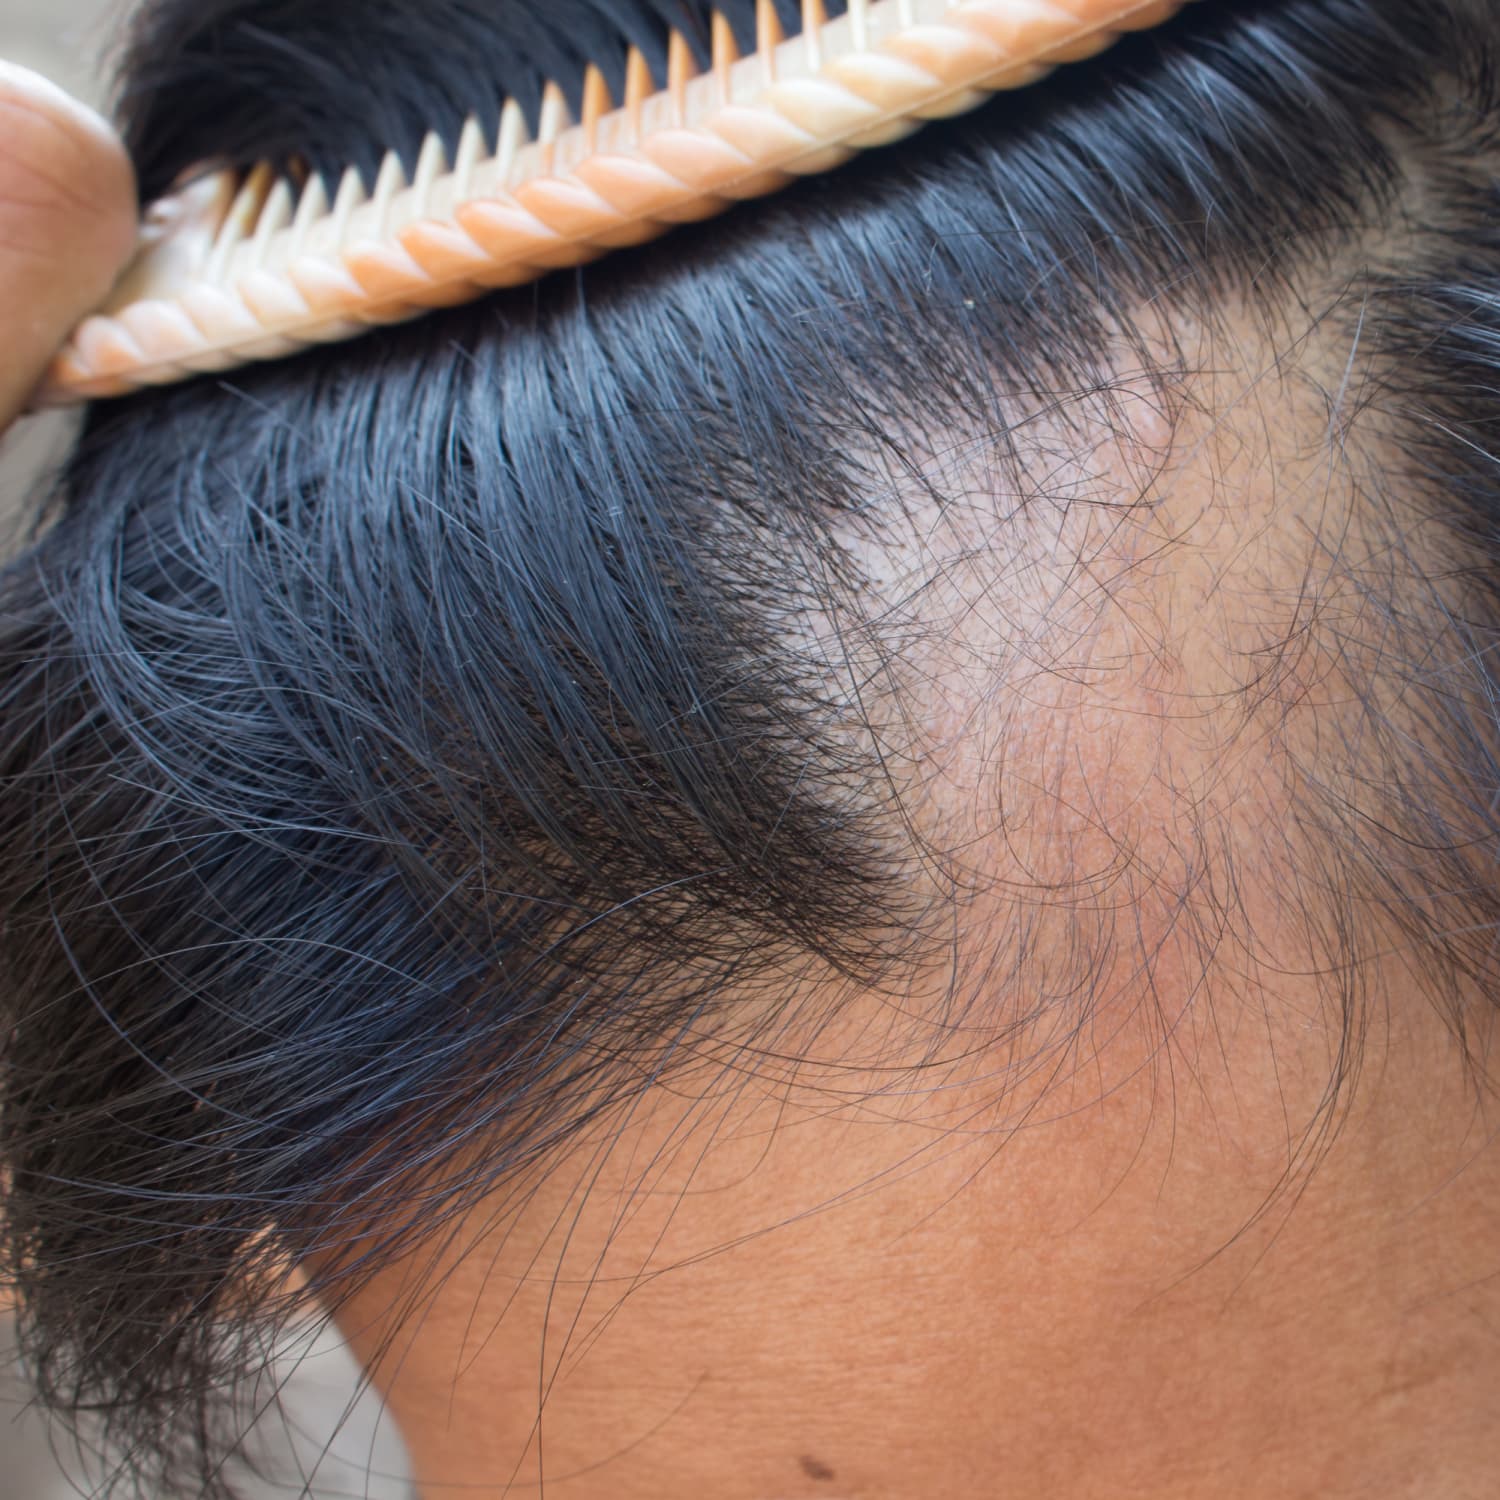 How to Treat Alopecia